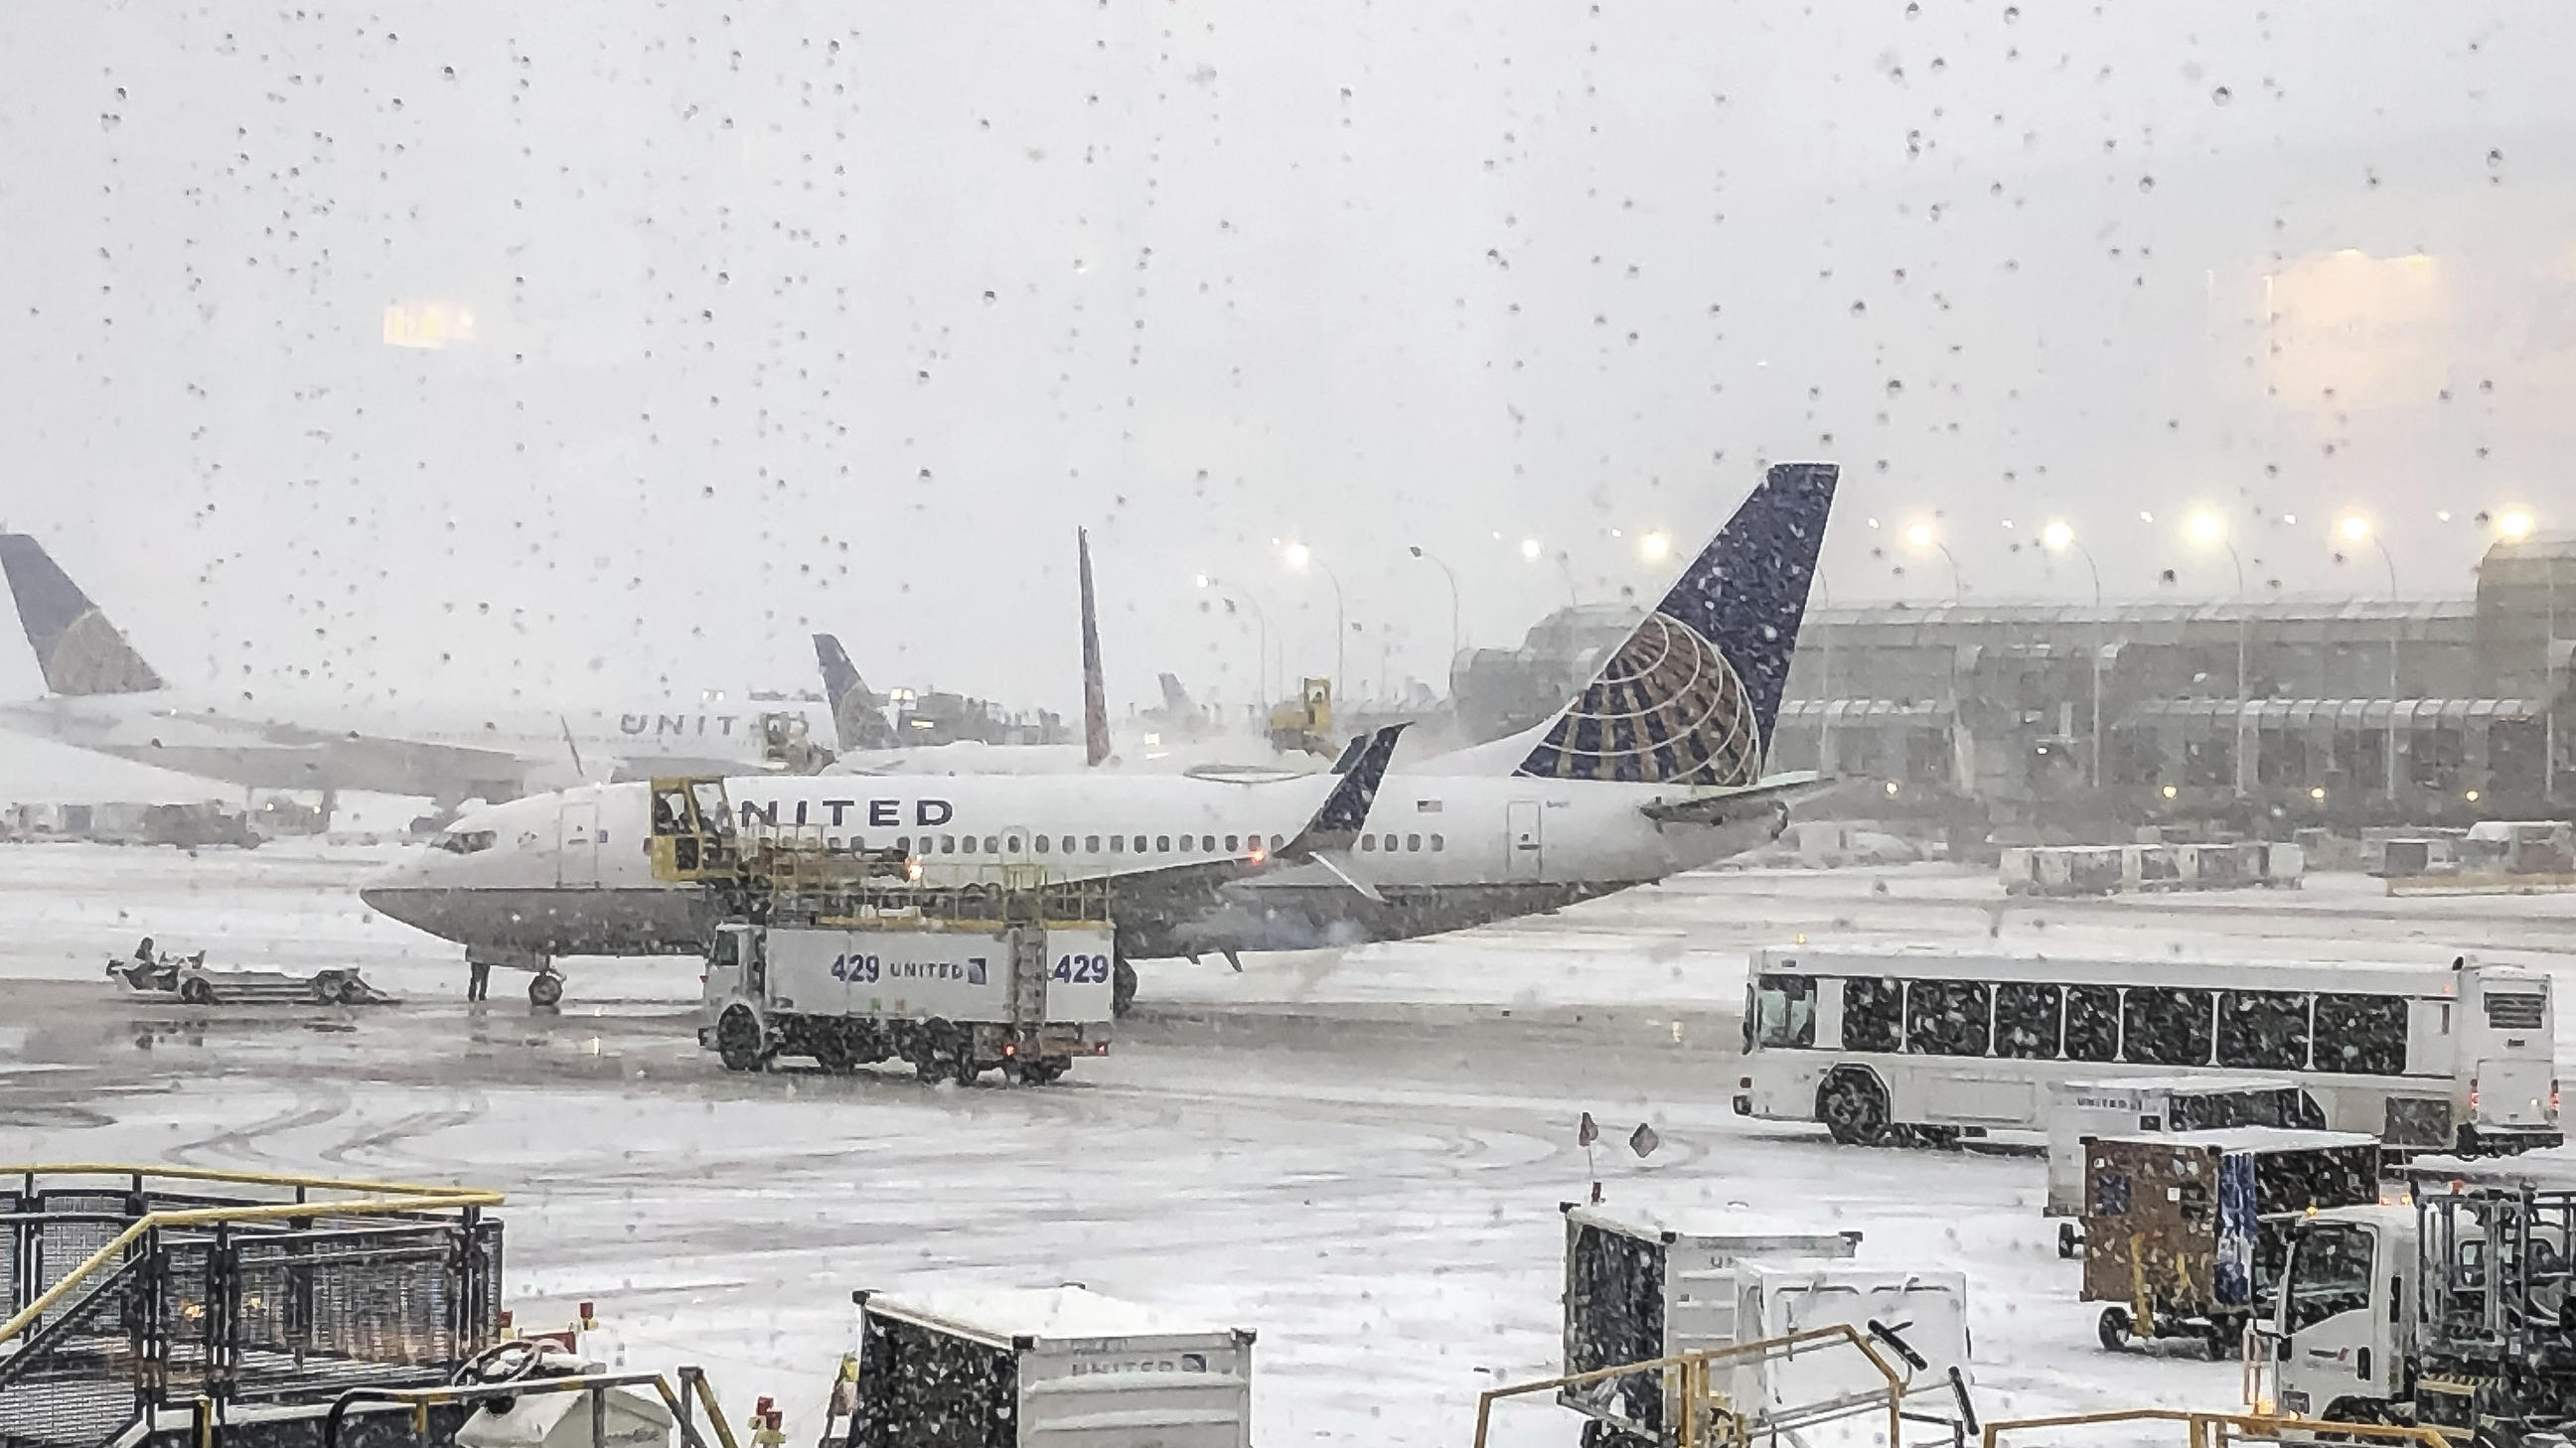 Schnee fällt auf das United Terminal am O'Hare Airport. Heftiger Schneefall hat in Chicago zu Hunderten Flugausfällen geführt. Der größte internationale Flughafen O'Hare war am Montag besonders betroffen.